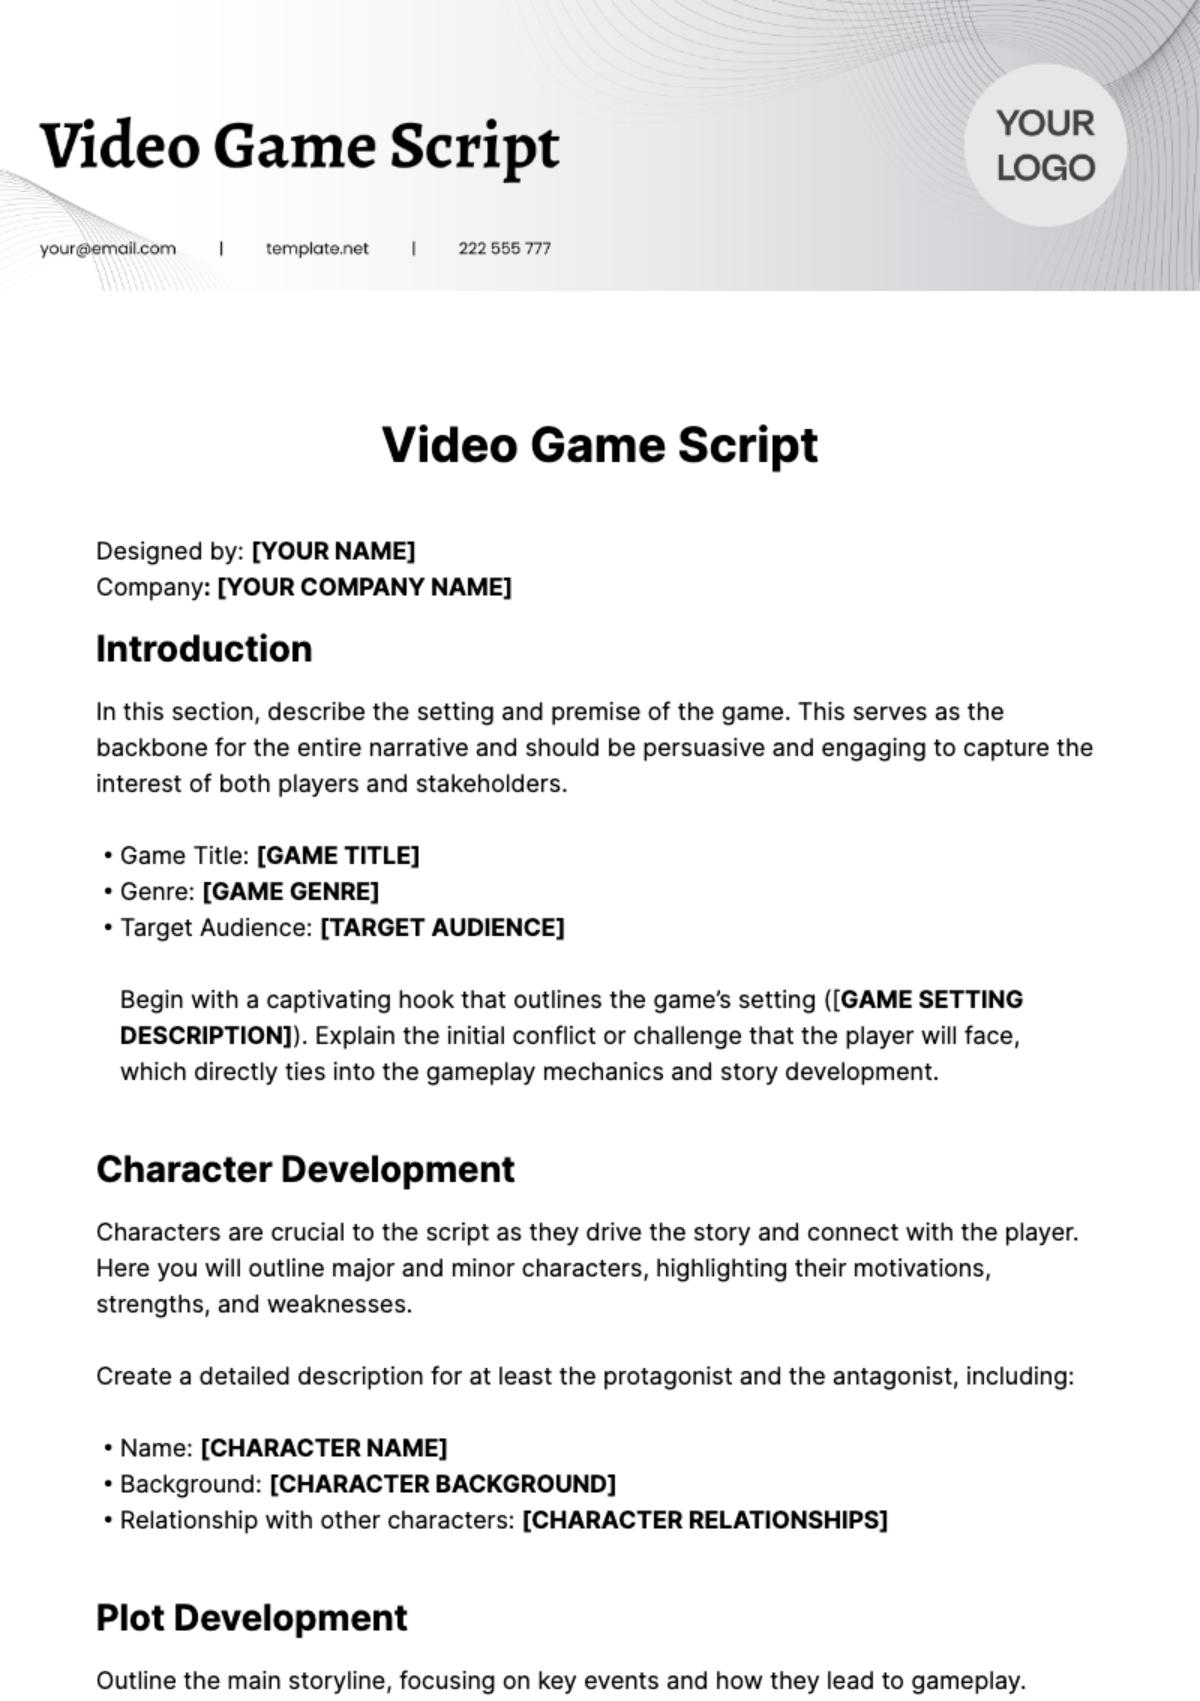 Video Game Script Template